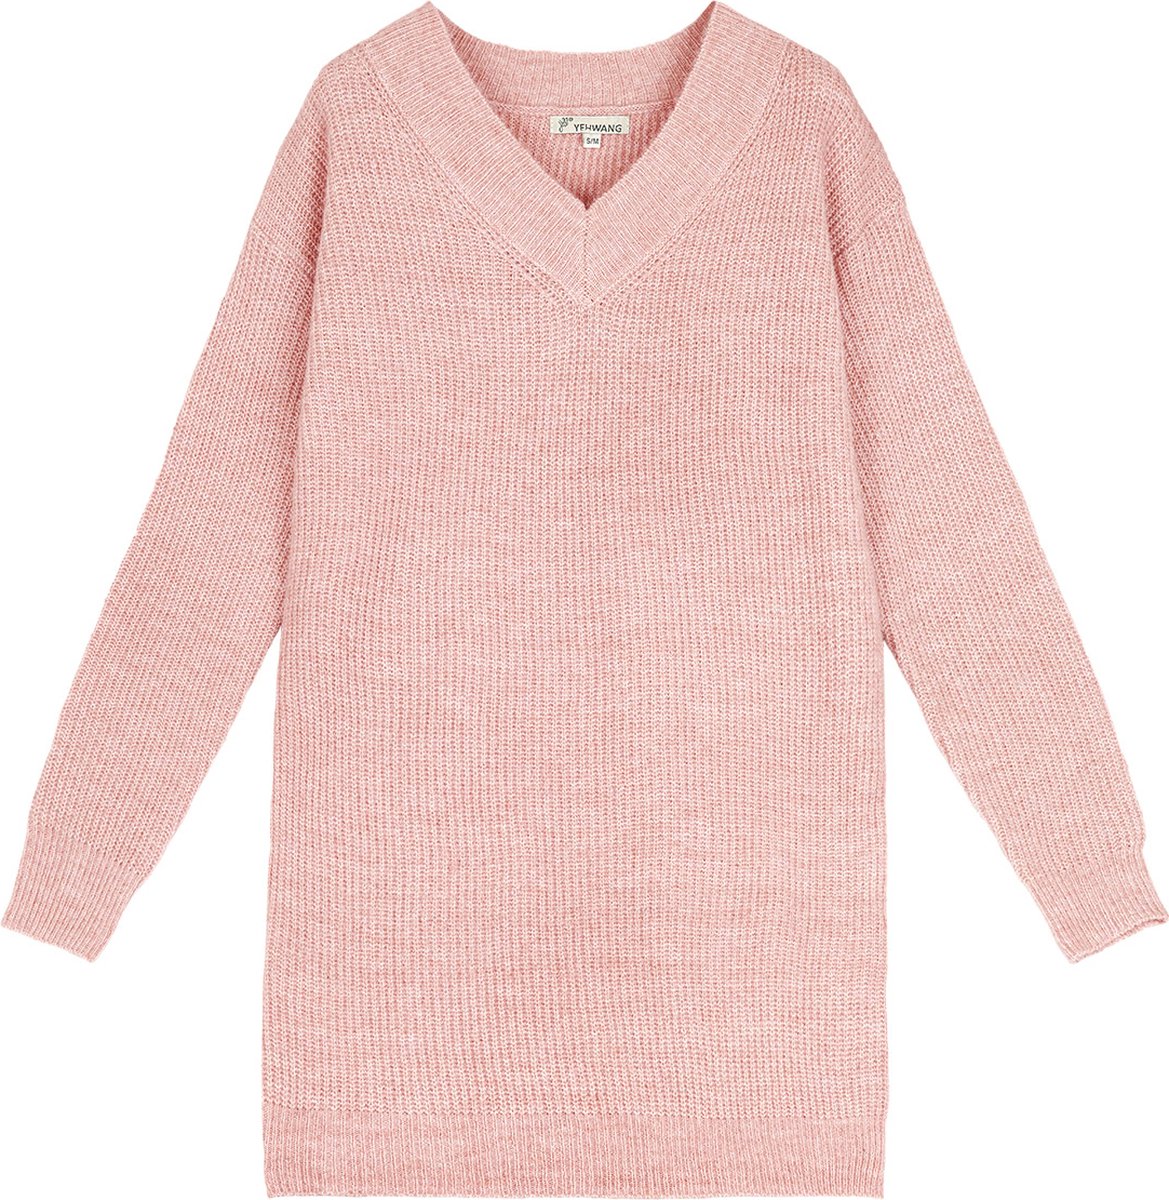 Roze Sweater Dress Wol - Maat ML - Sweater Jurk - Dames Jurken - Lange Sweaters - Roze